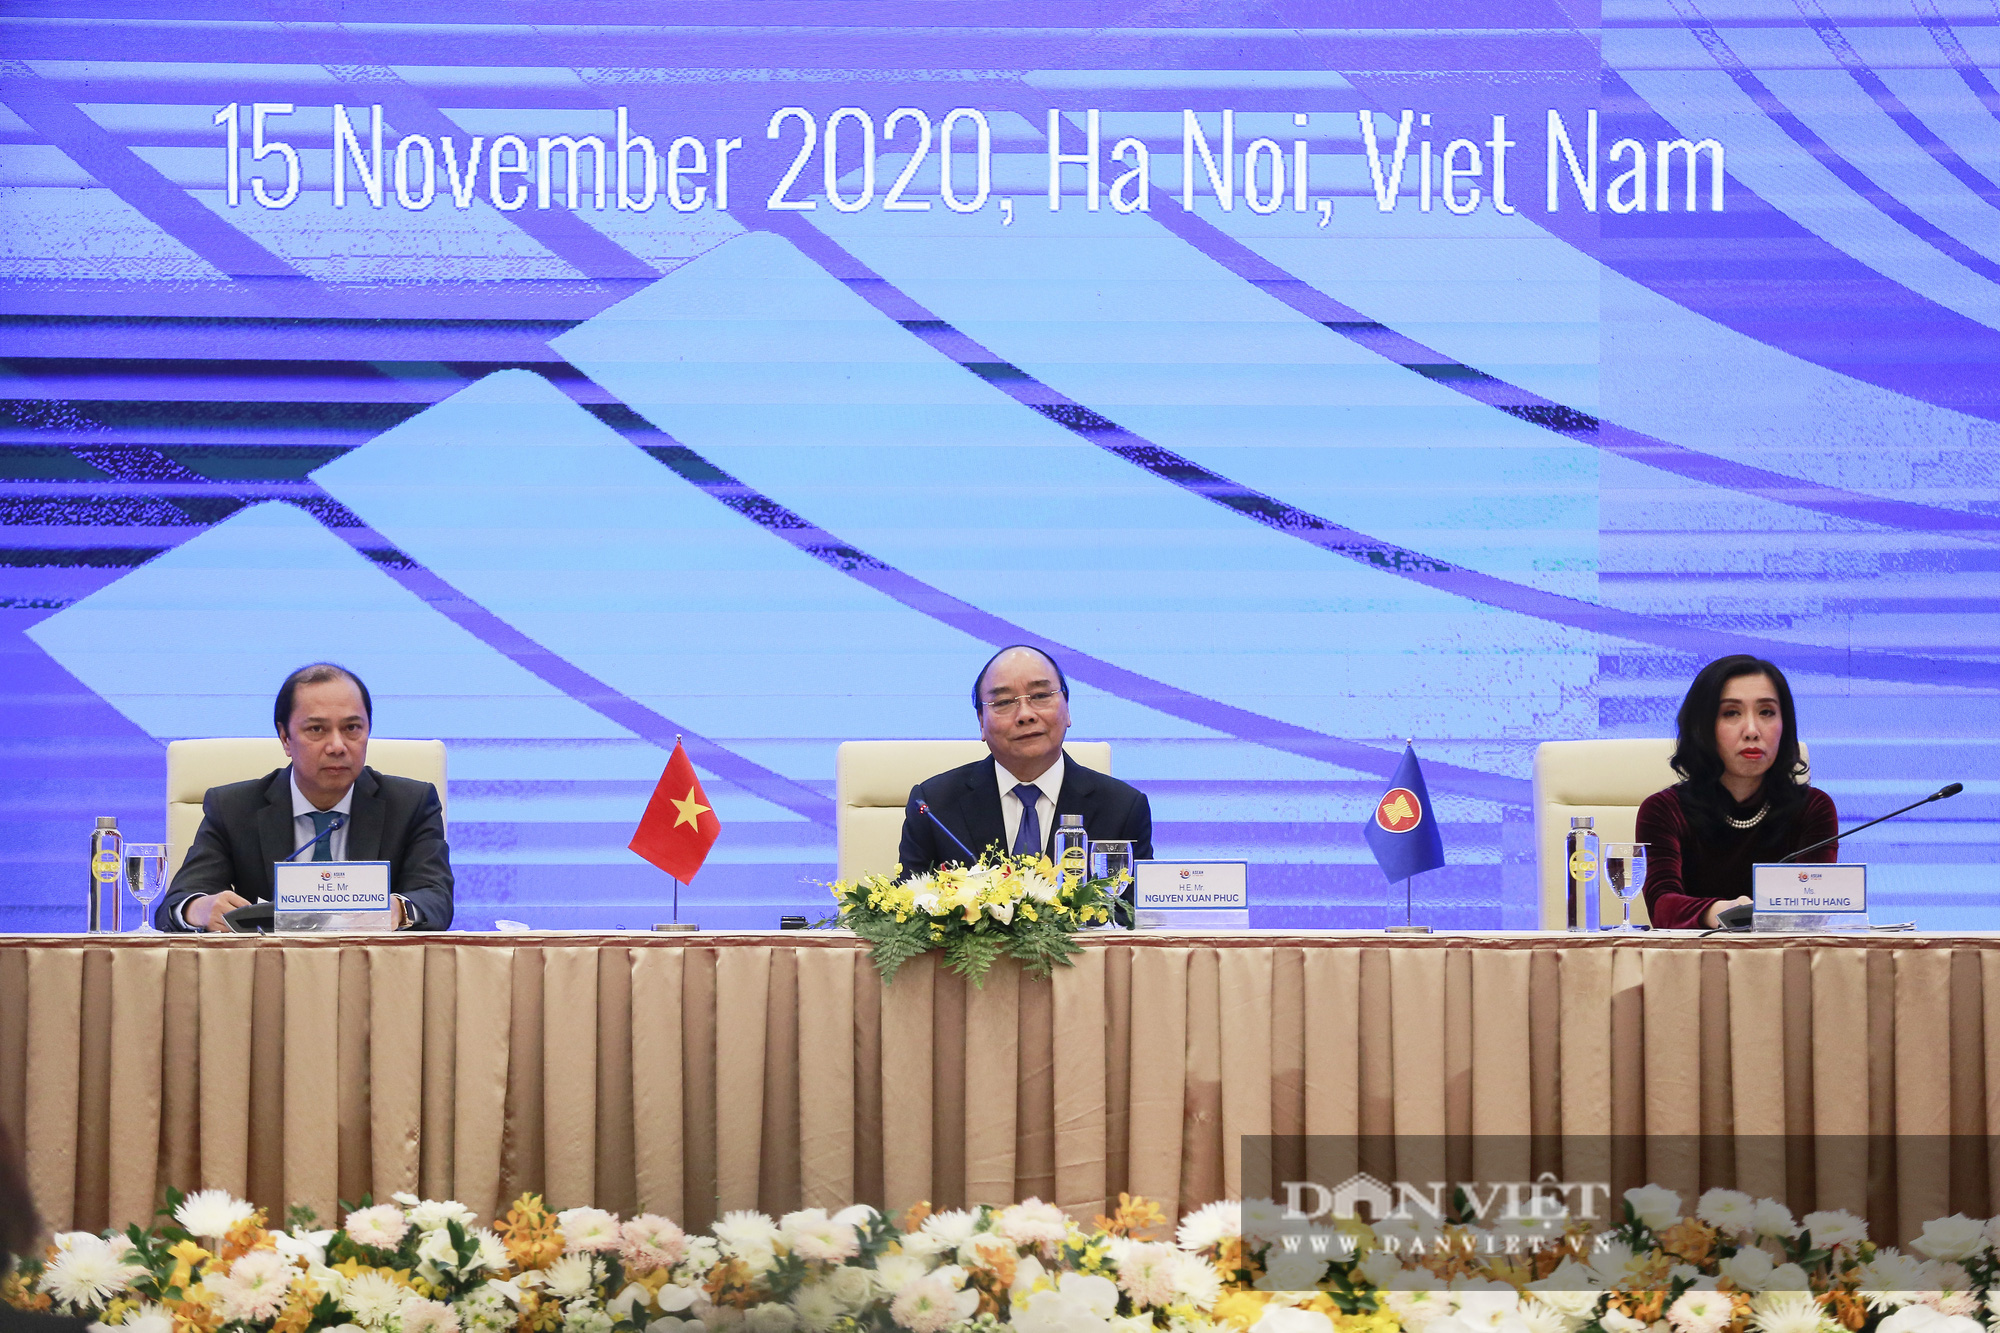 Bế mạc Hội nghị Cấp cao ASEAN 37 và chuyển giao vai trò Chủ tịch ASEAN - Ảnh 12.